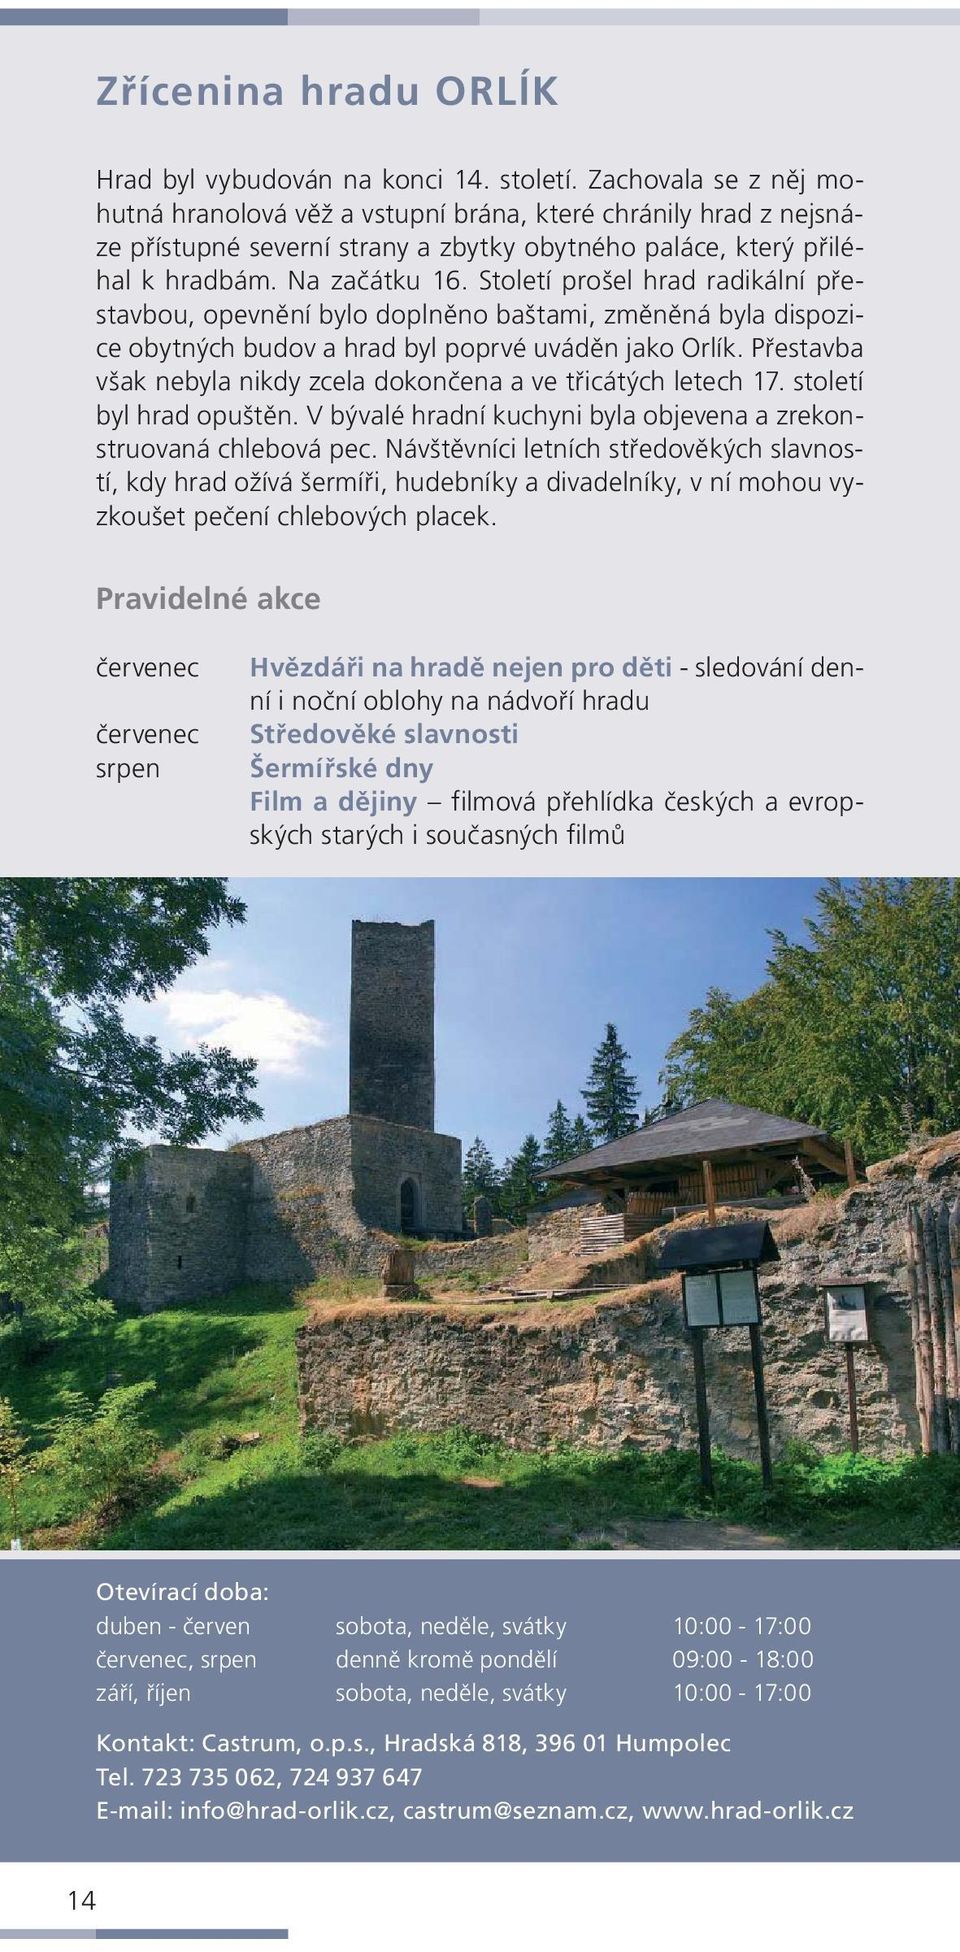 Století prošel hrad radikální přestavbou, opevnění bylo doplněno baštami, změněná byla dispozice obytných budov a hrad byl poprvé uváděn jako Orlík.